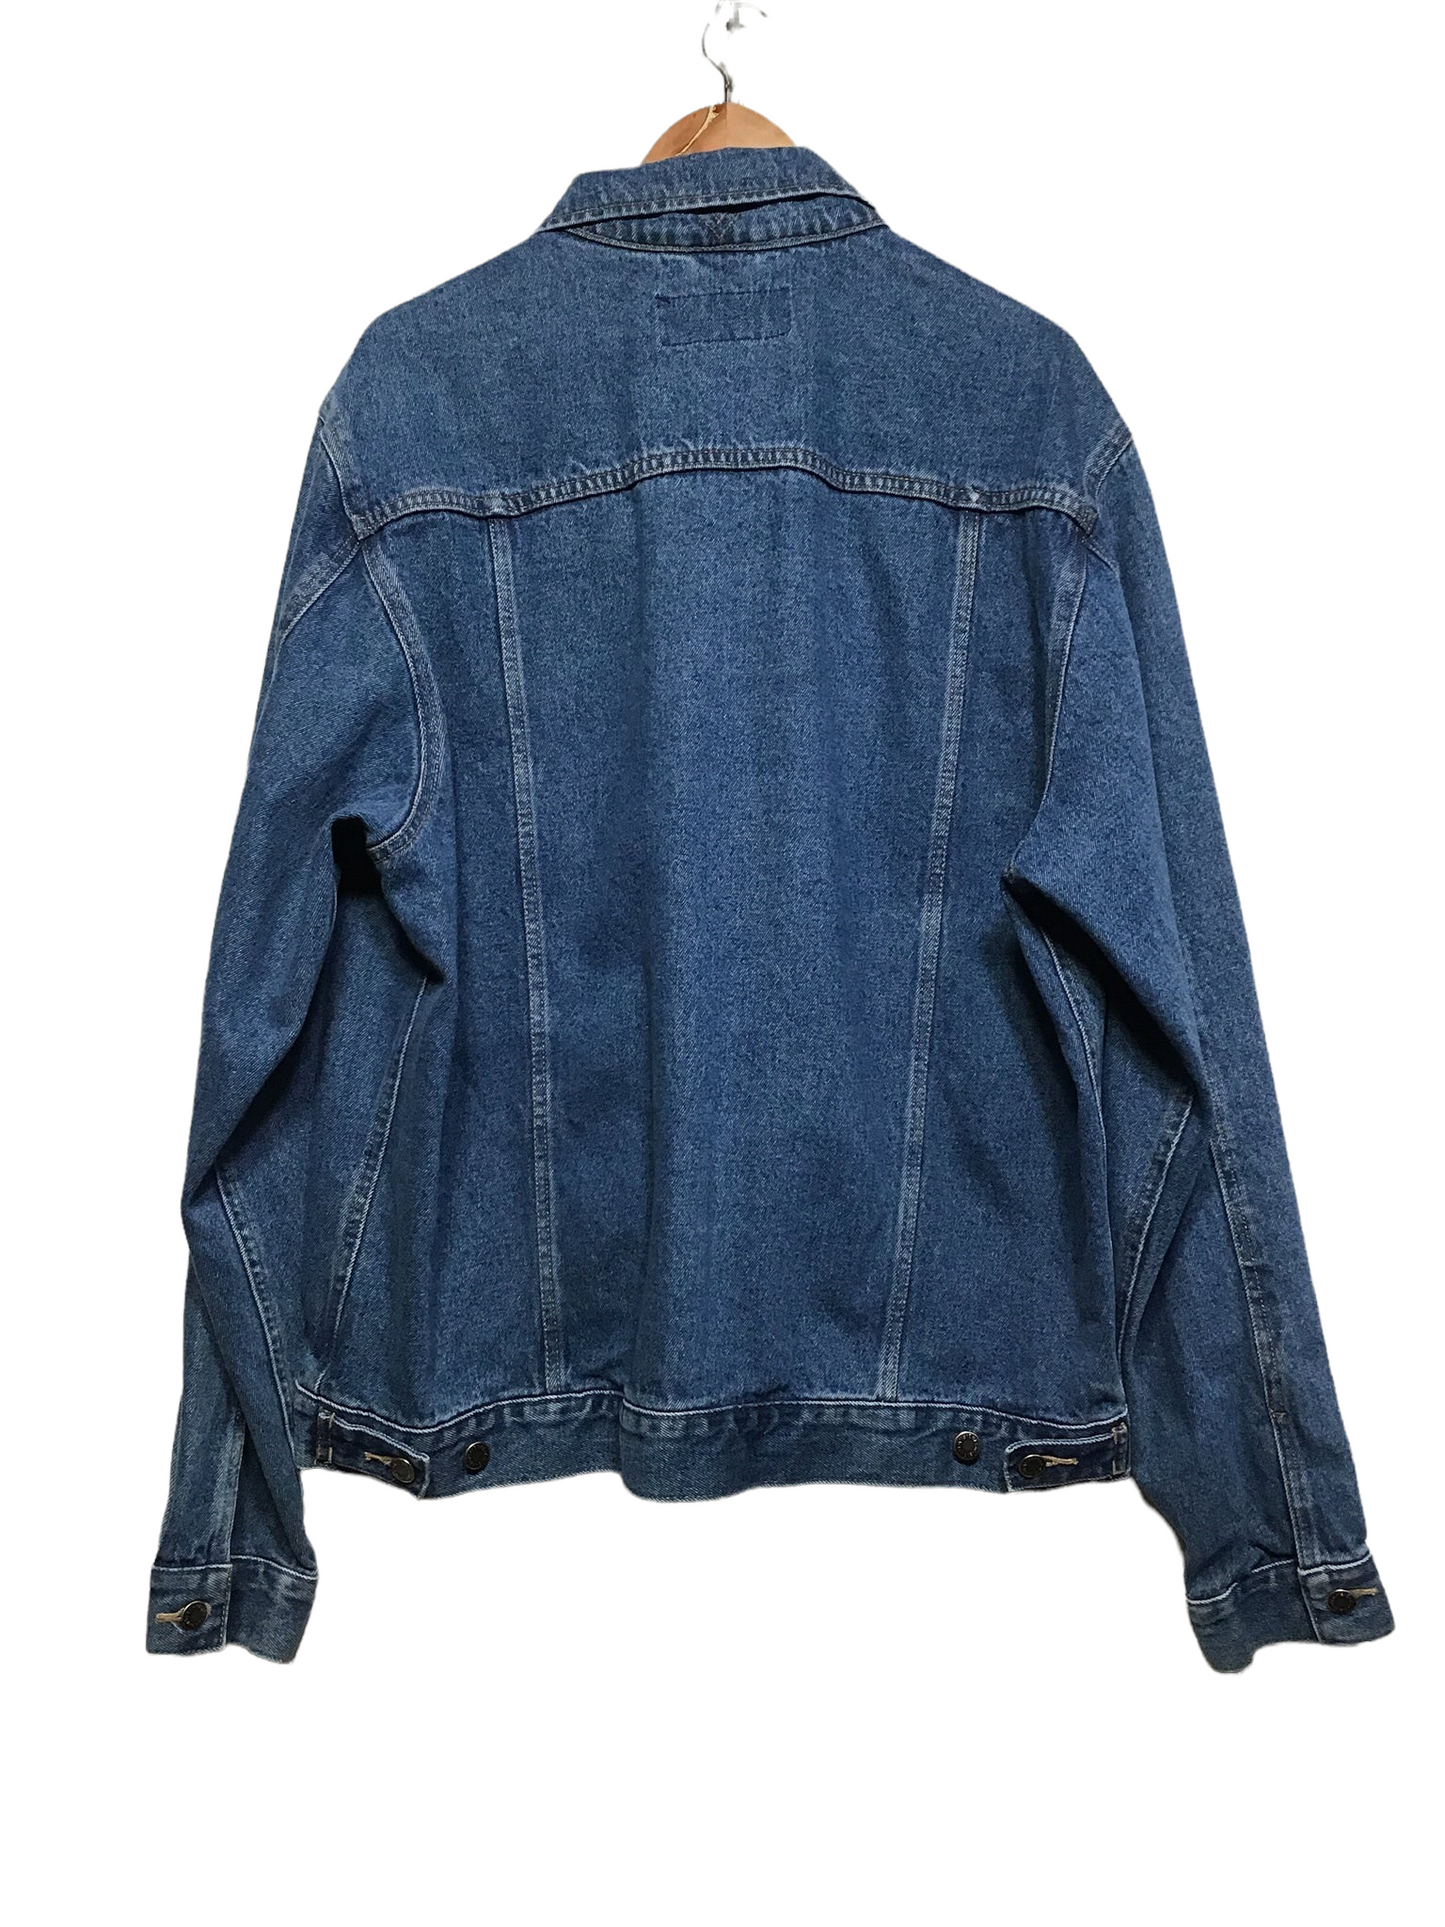 Wrangler Classic Denim Jacket (Size XL)